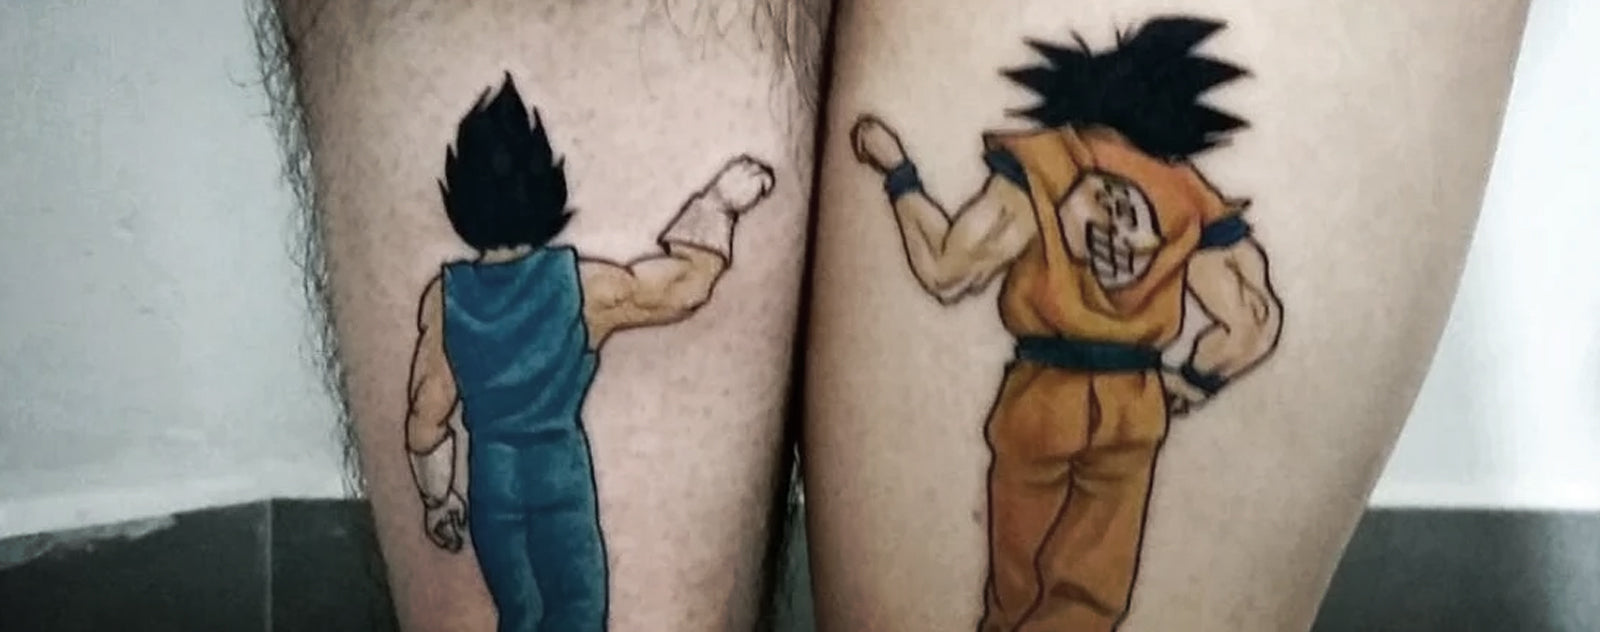 Vegeta and Goku tattoo